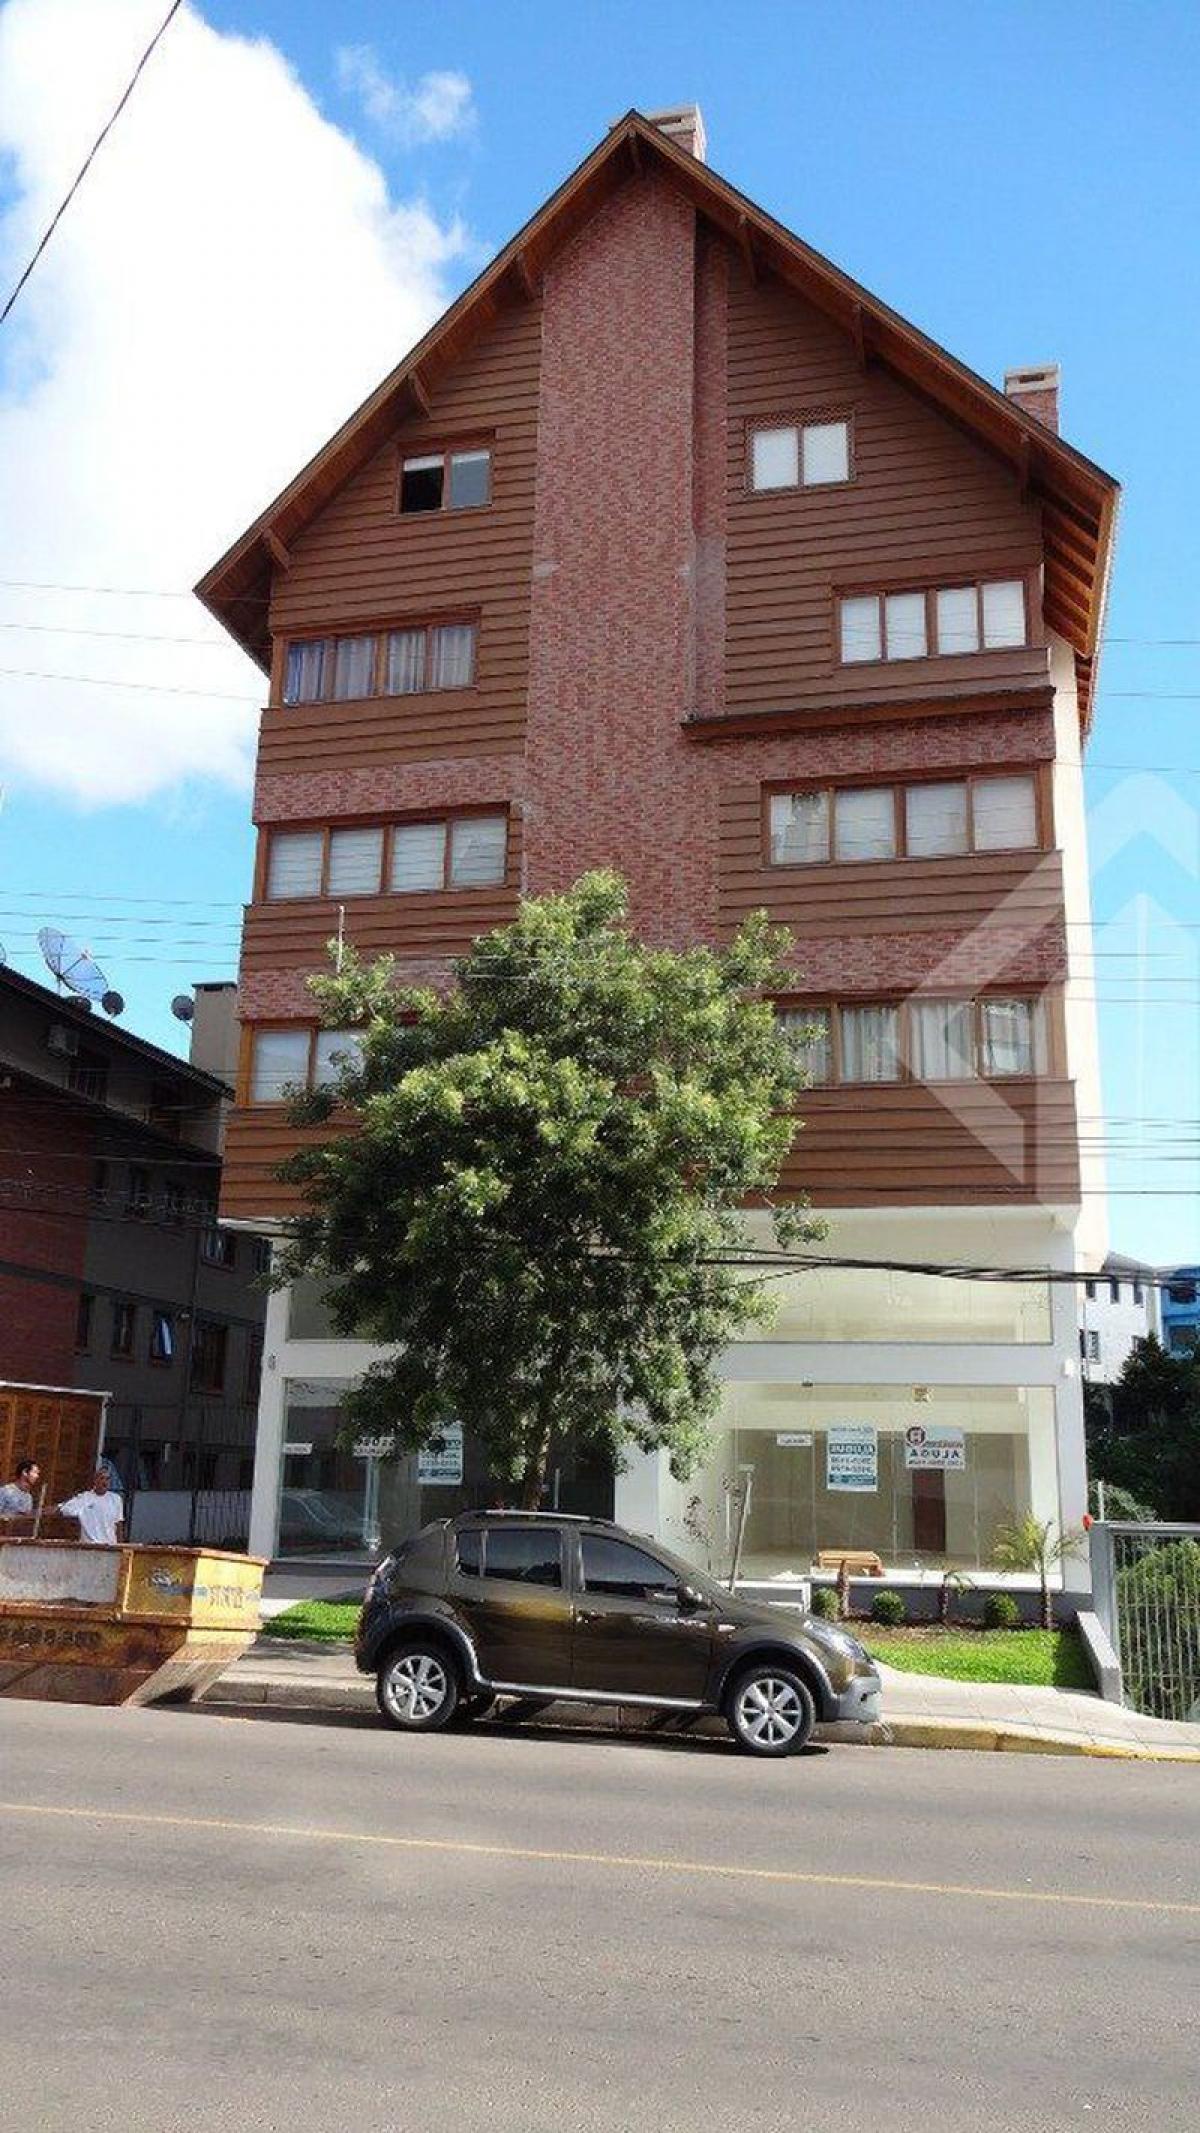 Picture of Commercial Building For Sale in Gramado, Rio Grande do Sul, Brazil